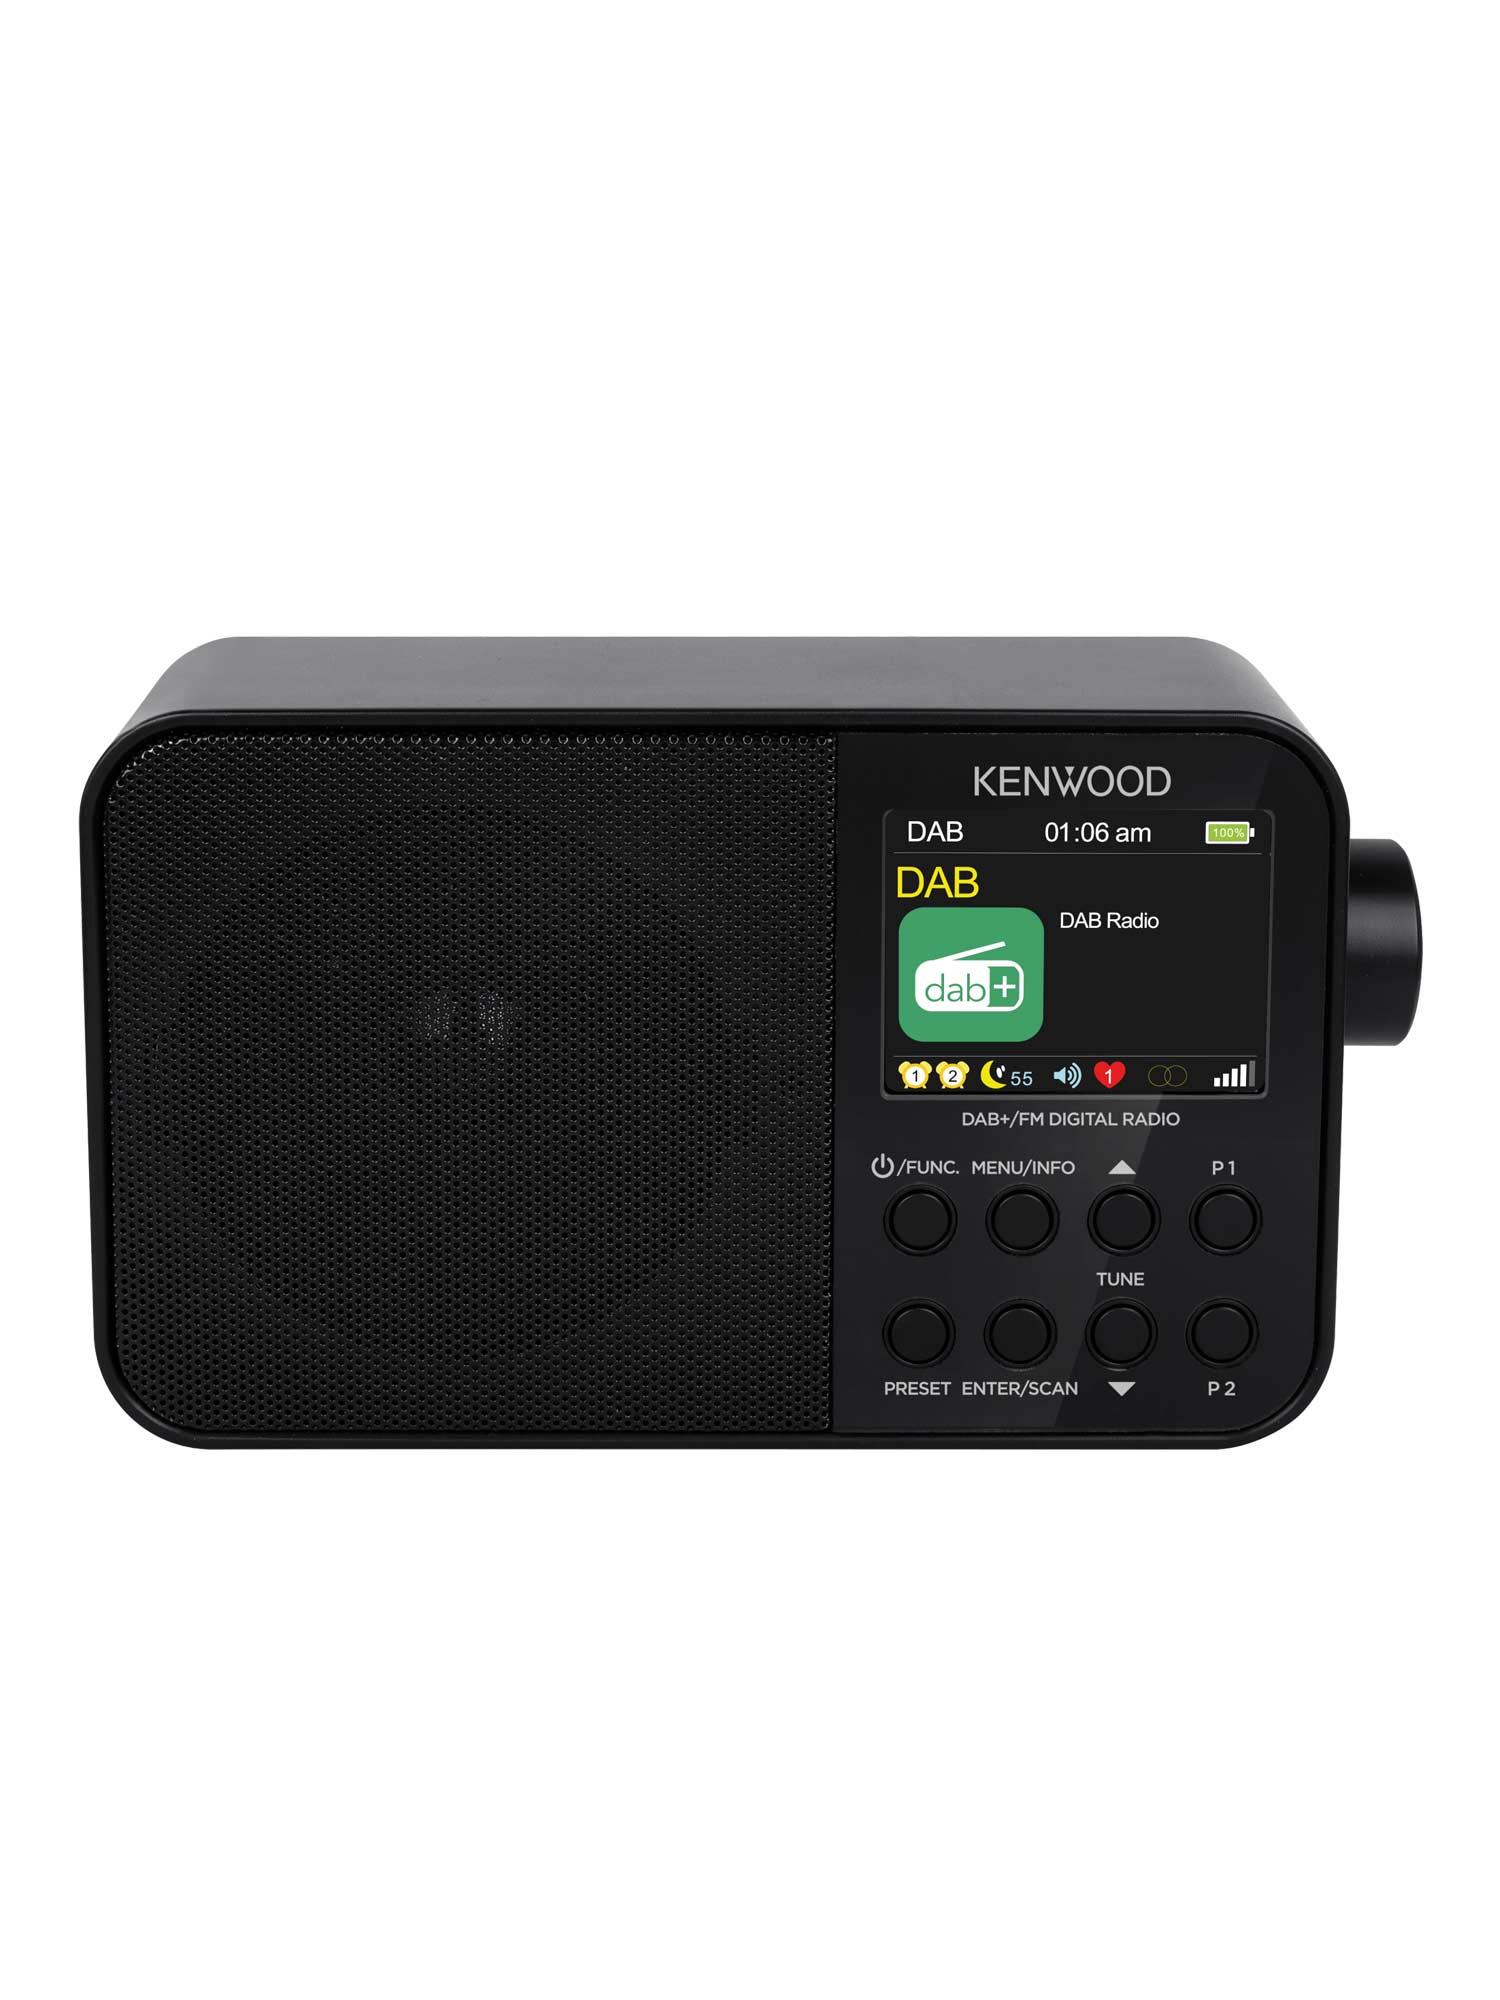 Radios - Portable AM/FM Digital Radios 